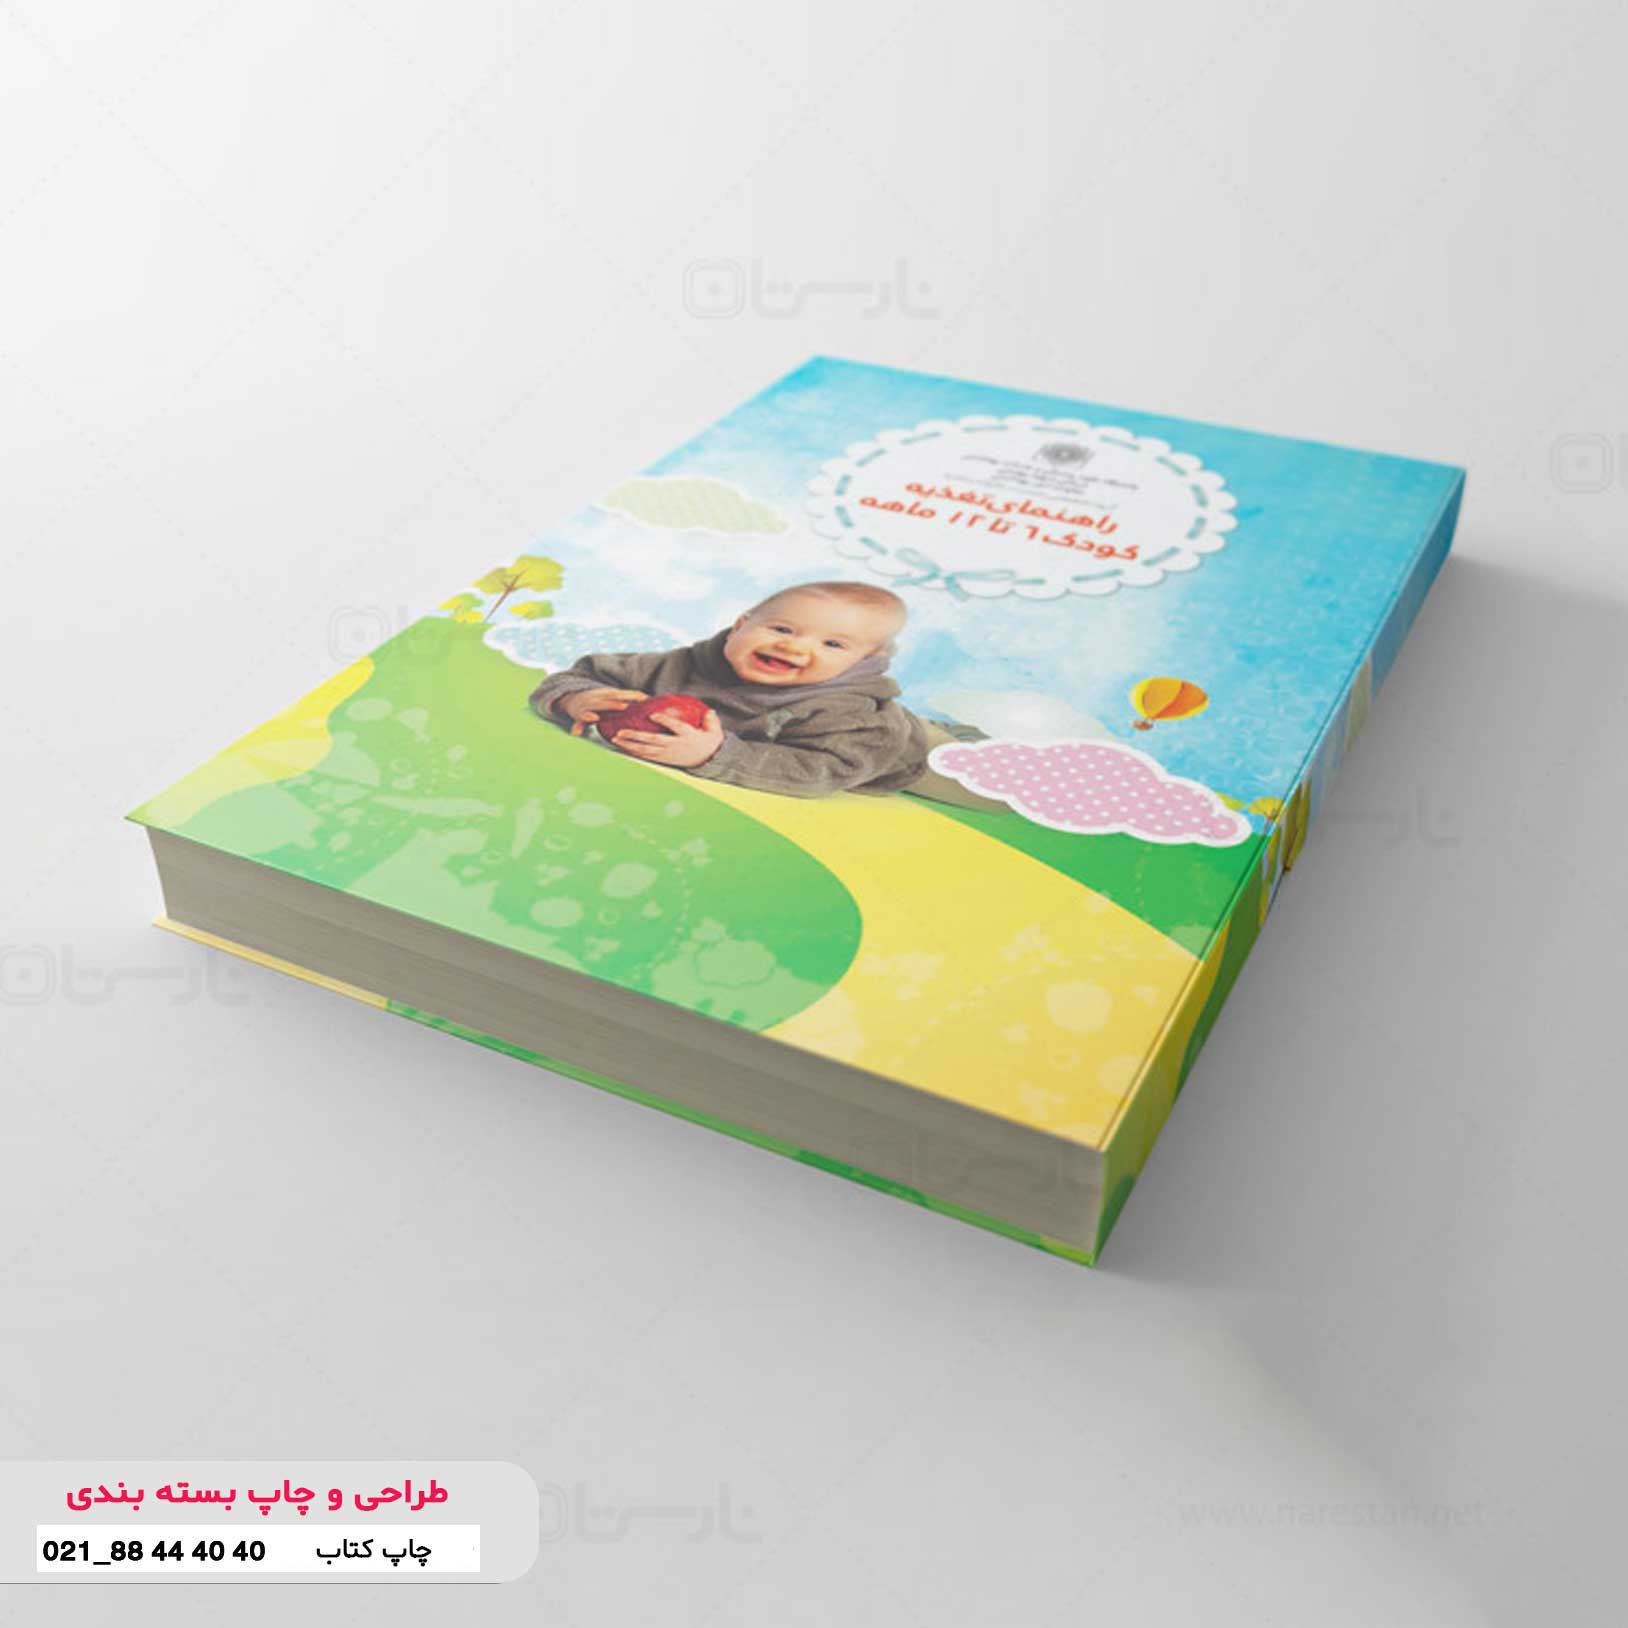 نگارش ، طراحی و چاپ کتاب تغذیه کودک شش تا دوازده ماهه